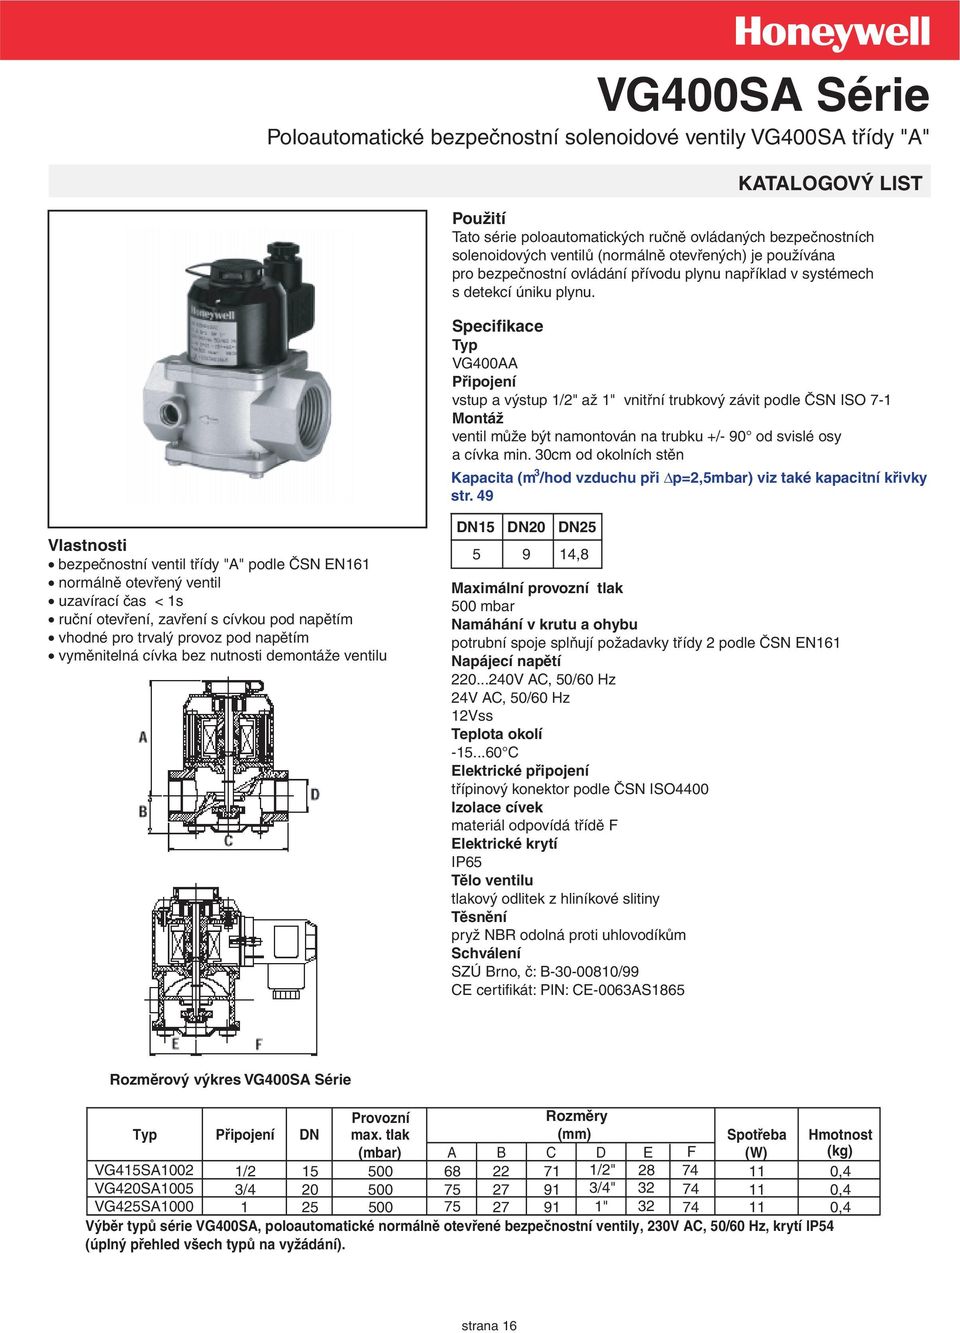 Specifikace Typ VG400AA Připojení vstup a výstup 1/2" až 1" vnitřní trubkový závit podle ČSN ISO 7-1 Montáž ventil může být namontován na trubku +/- 90 od svislé osy a cívka min.